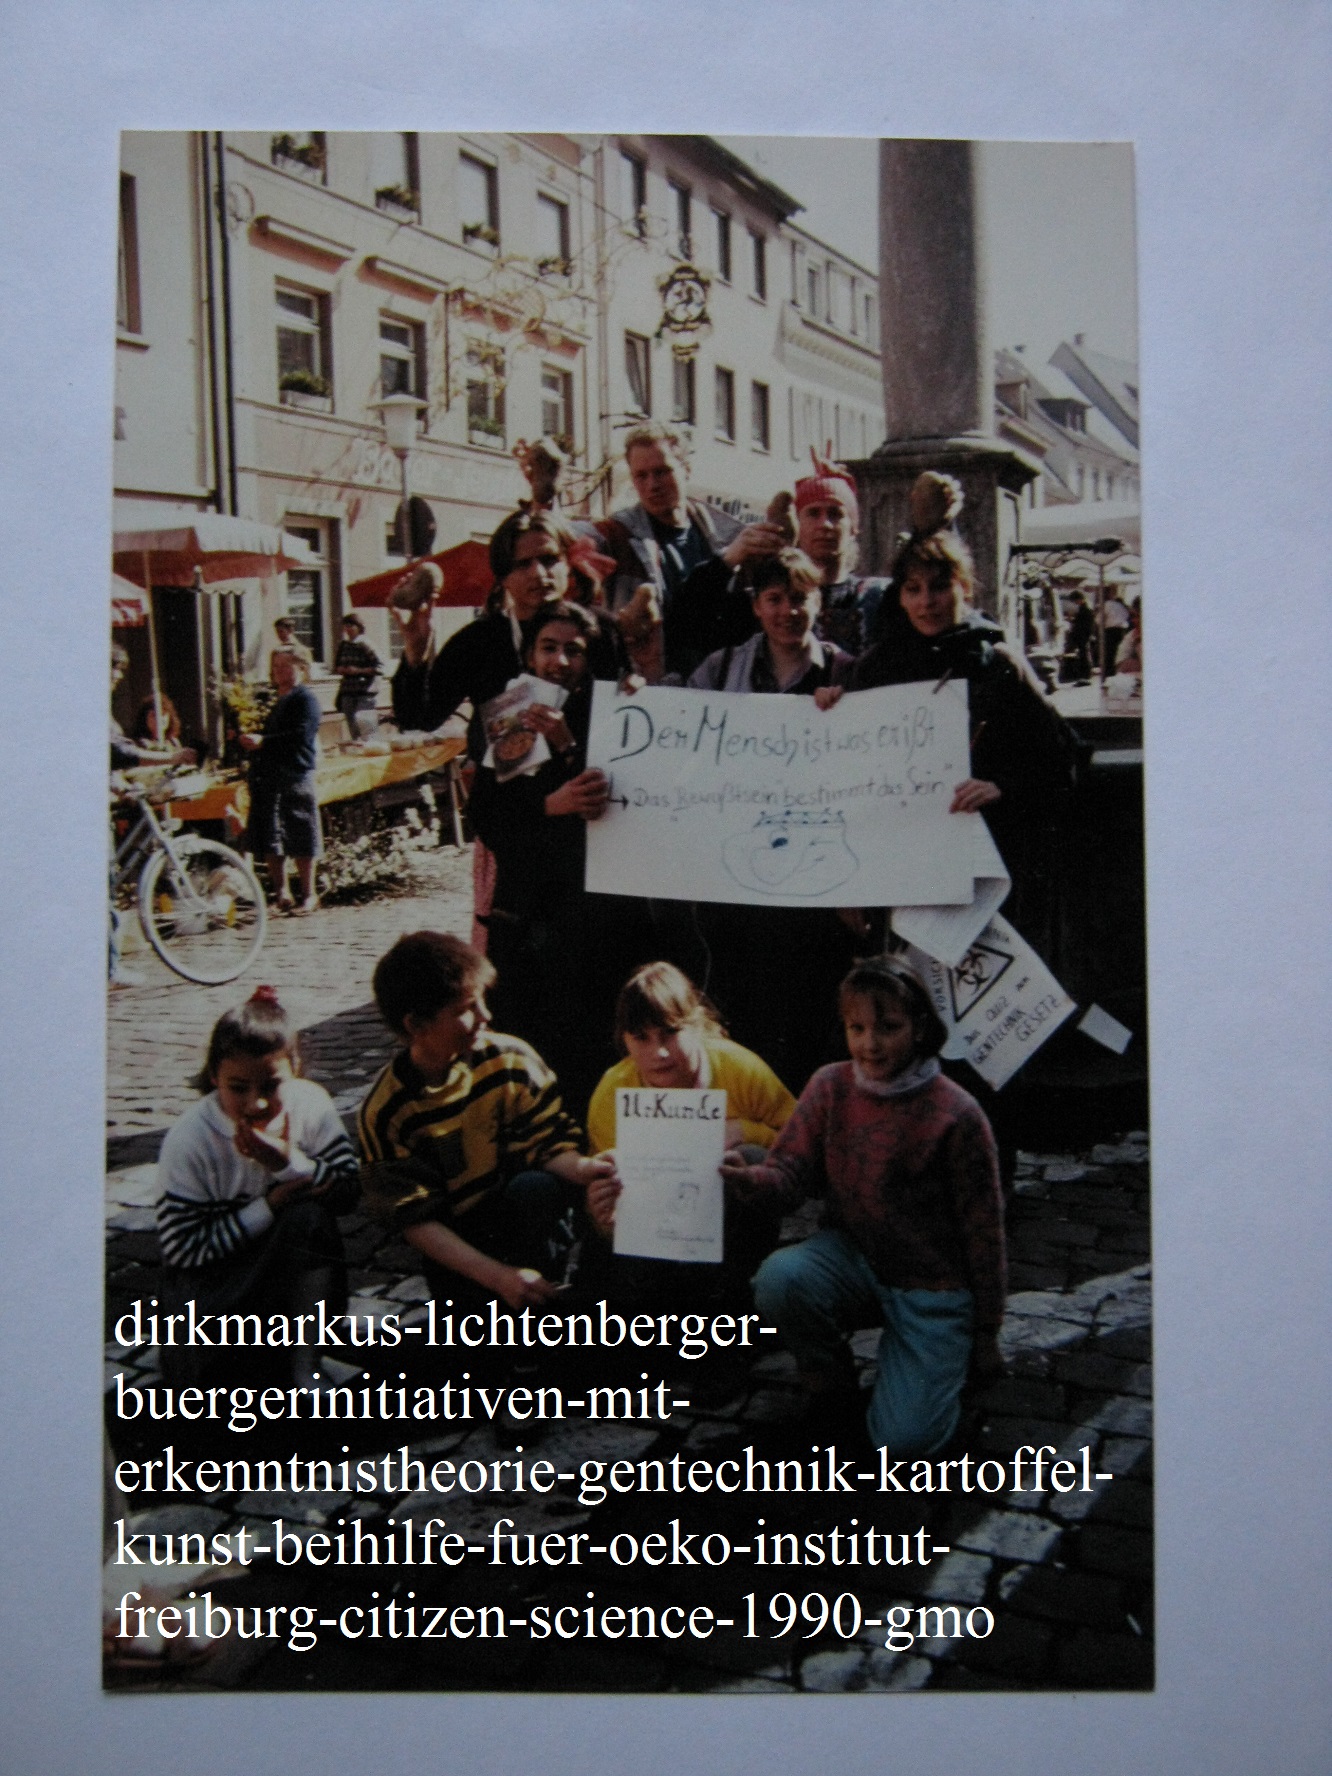 dirkmarkus-lichtenberger-buergerinitiativen-mit-erkenntnistheorie-gentechnik-kartoffel-kunst-beihilfe-fuer-oeko-institut-freiburg-citizen-science-1990-gmo